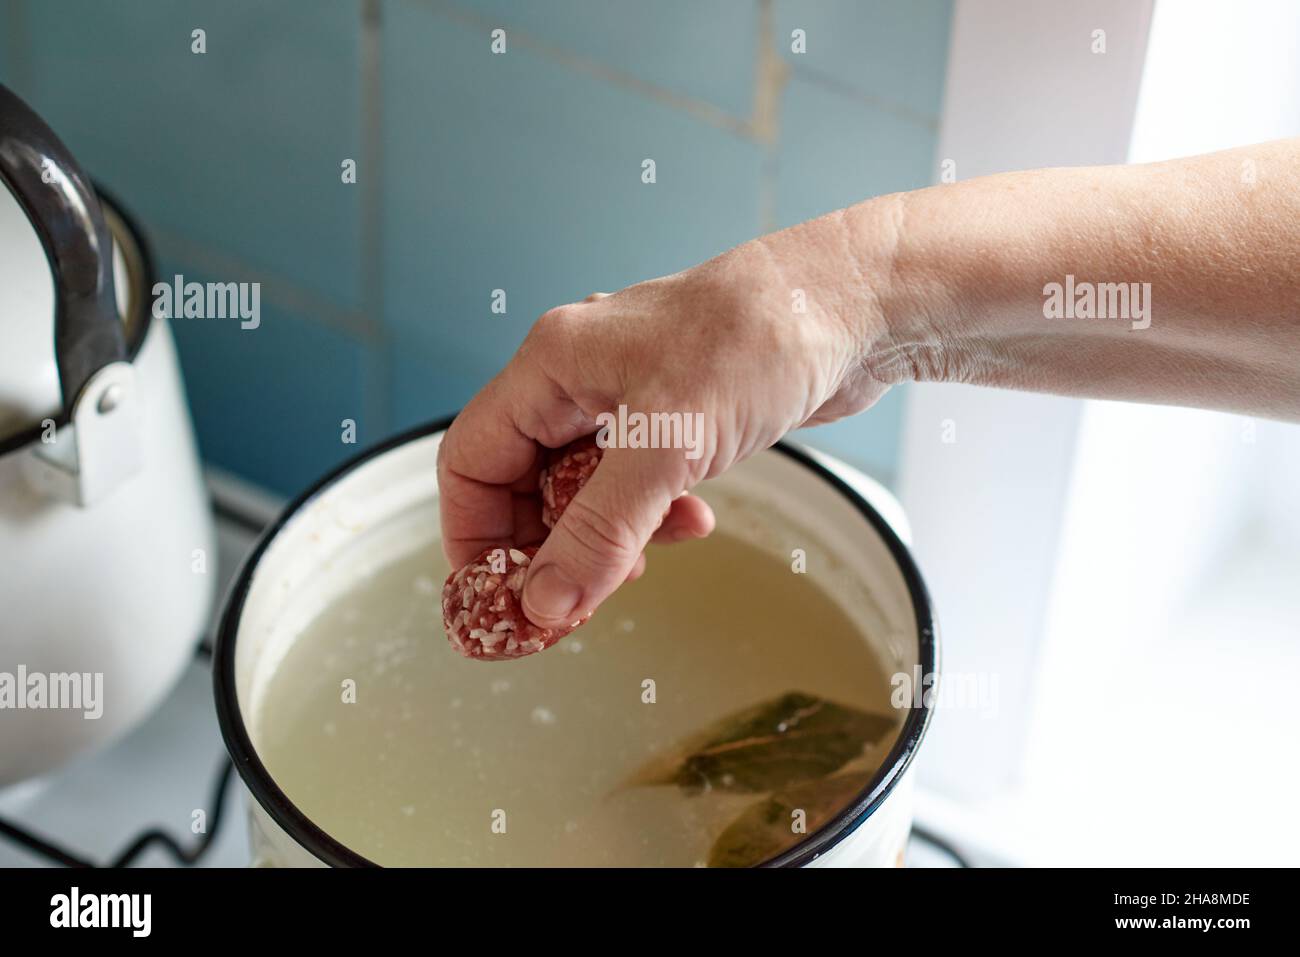 La main d'une femme jette un meatball dans un pot de soupe bouillante.Une cuisine maison saine. Banque D'Images